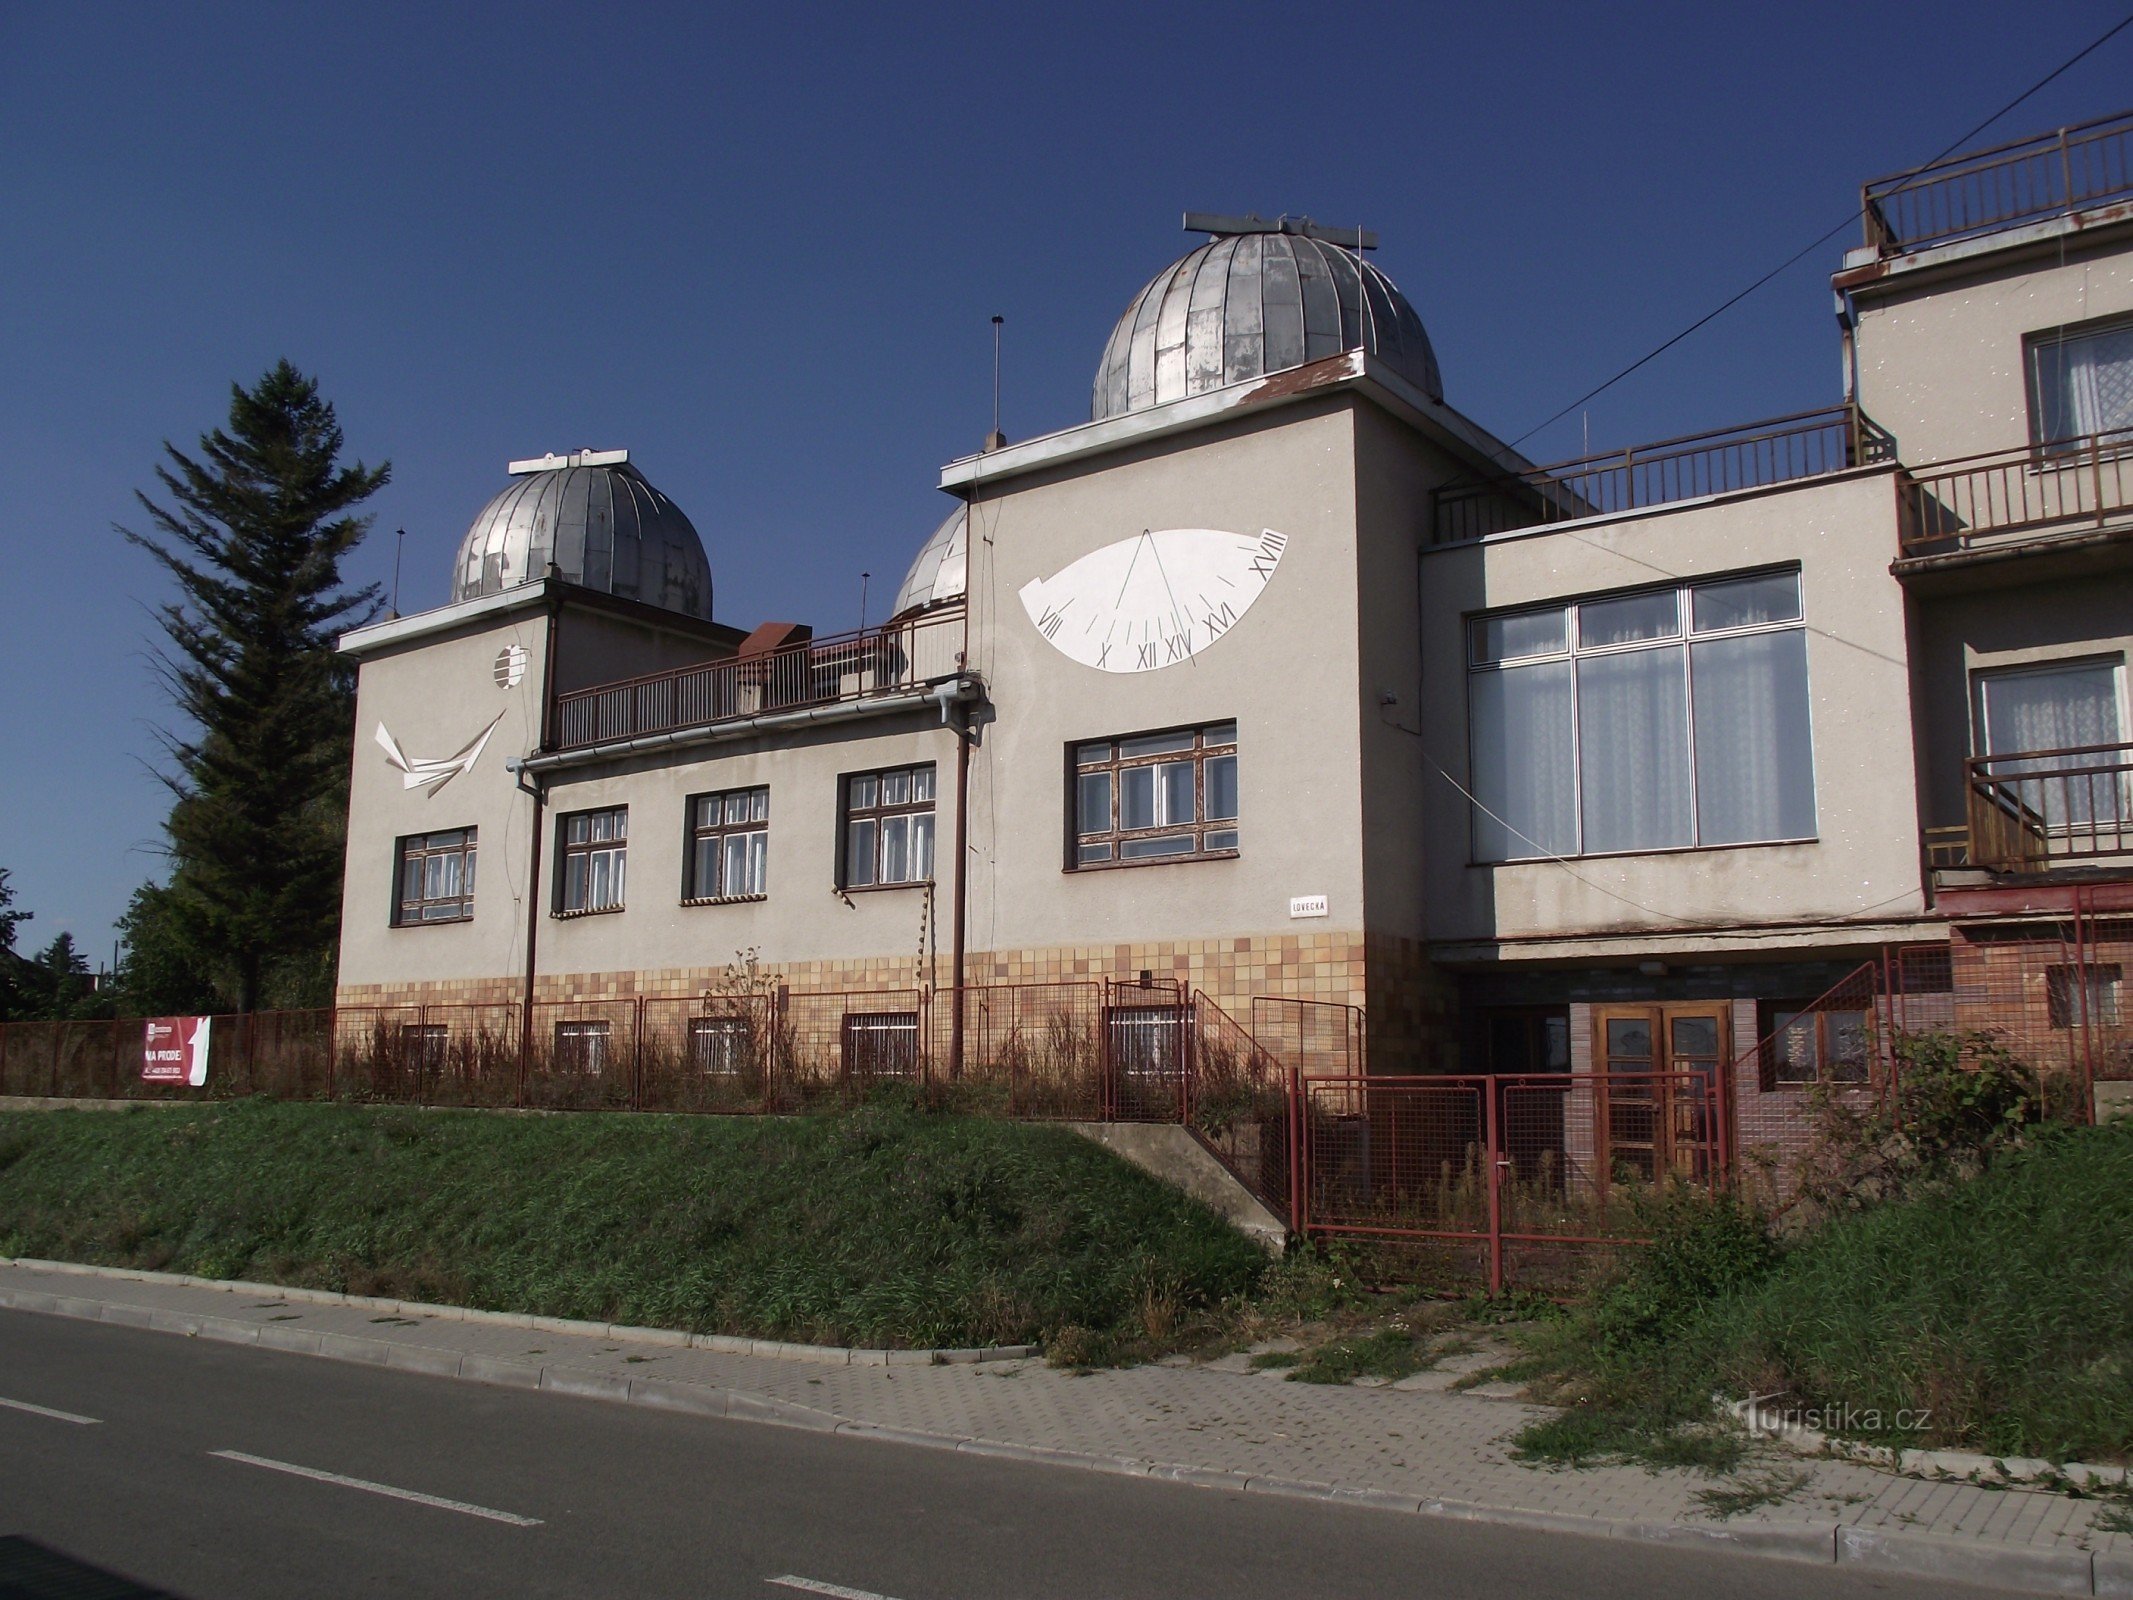 Ždánice - observatory